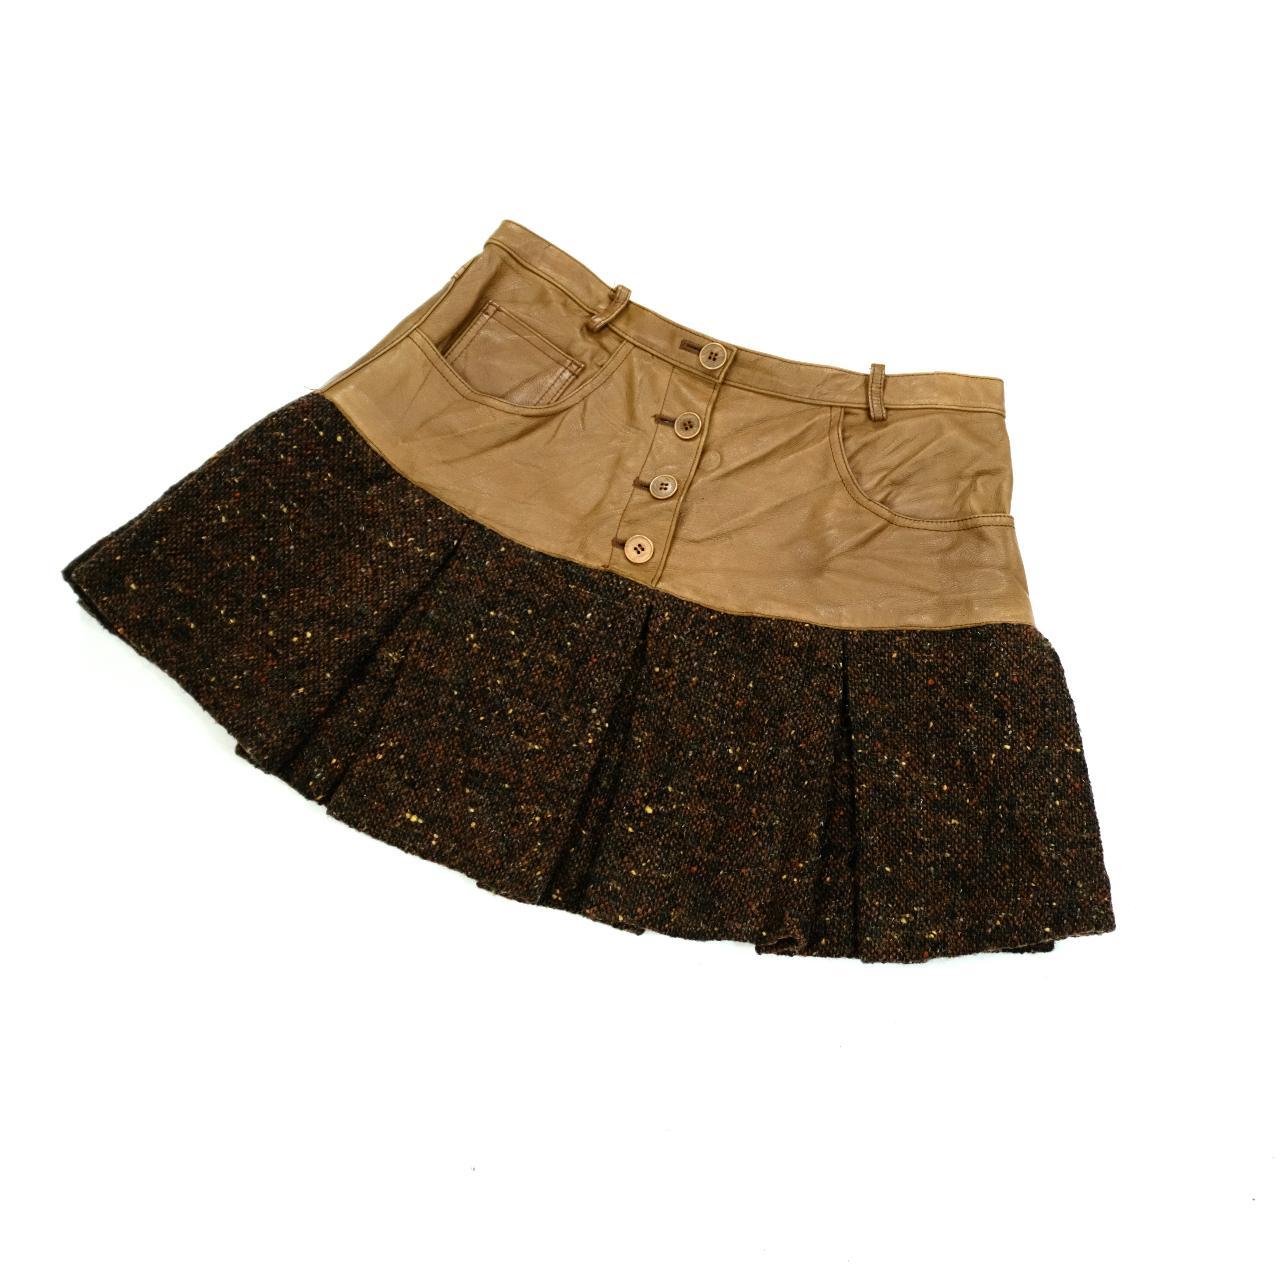 Pacco Rabanne Skirt